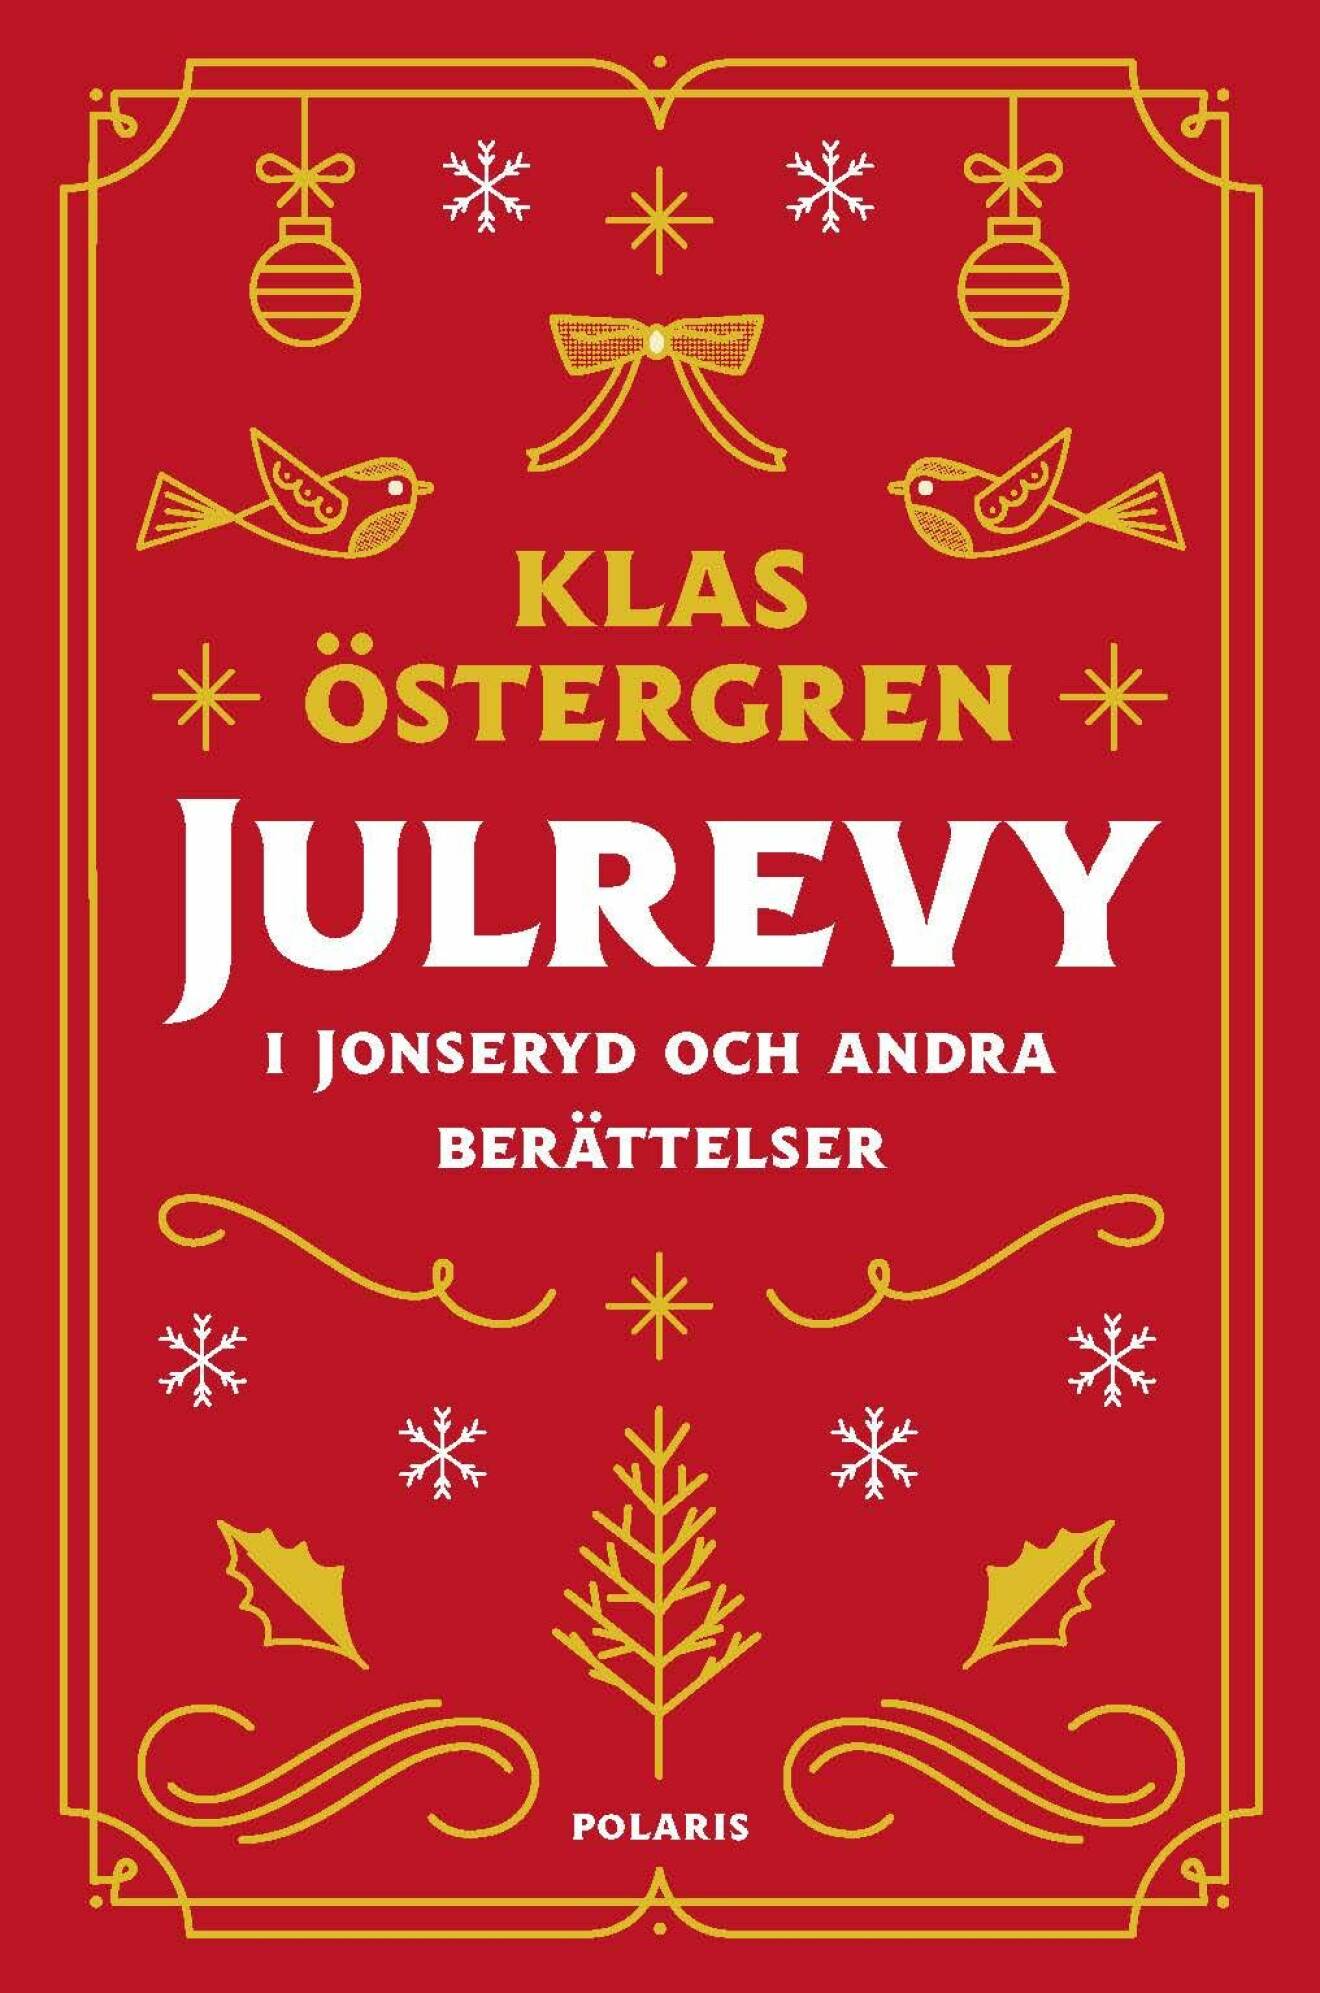 Julrevy i Jonseryd och andra berättelser, Klas Östergren (Polaris)